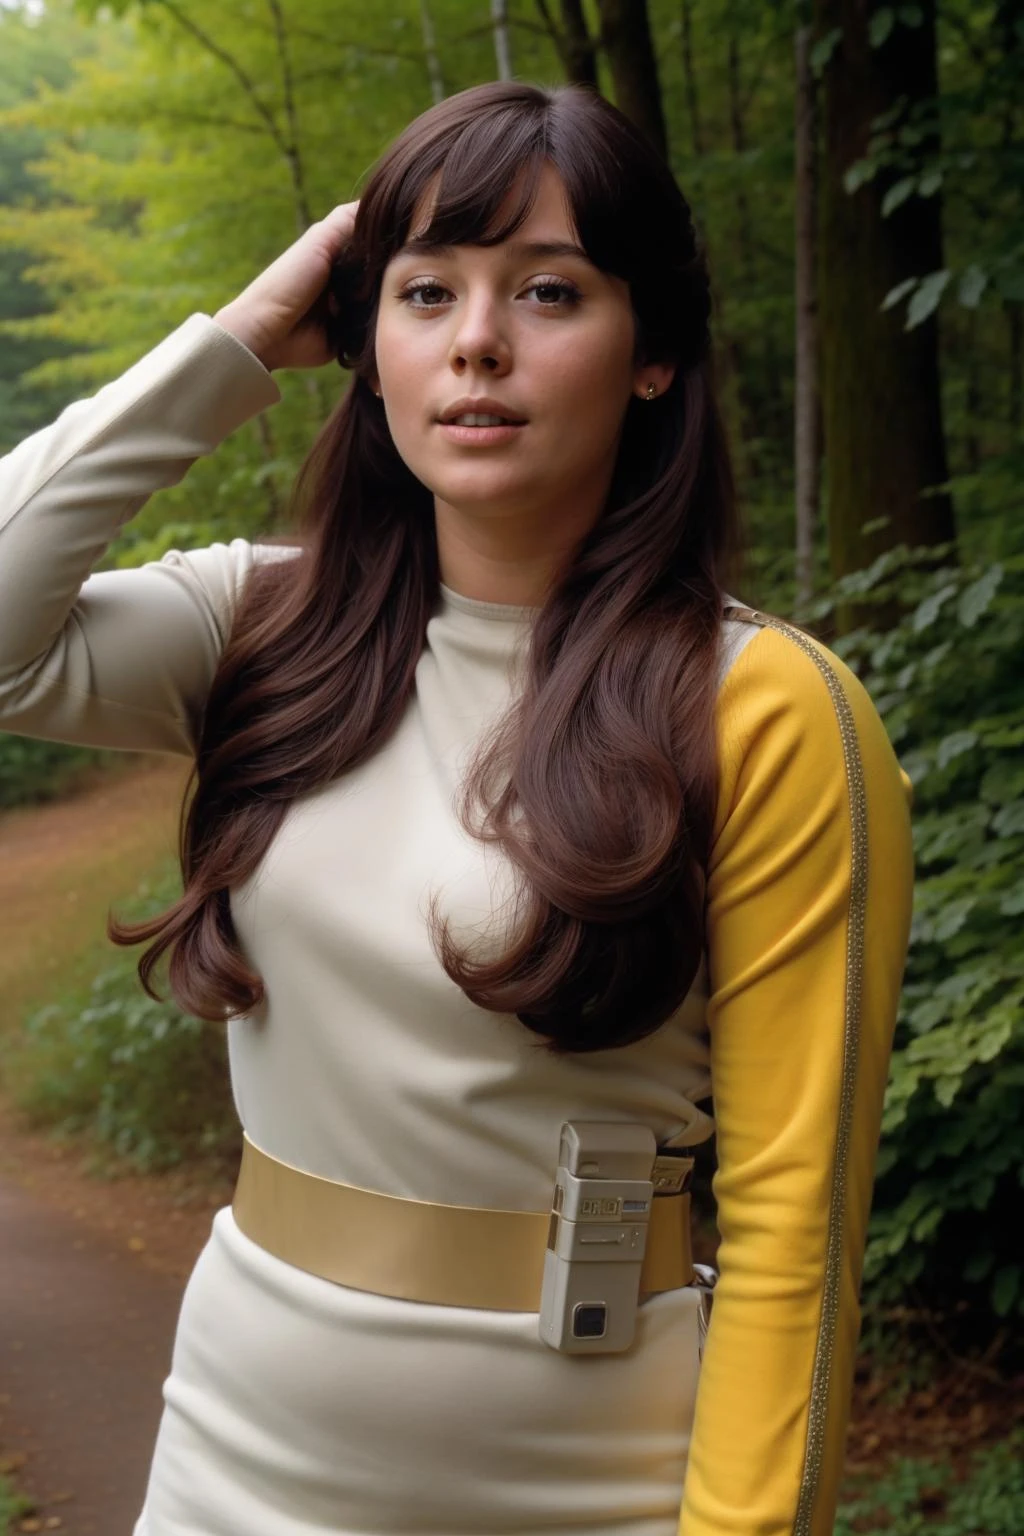 jovem com cabelo comprido em uniforme s1999unf,manga esquerda amarela,em uma floresta